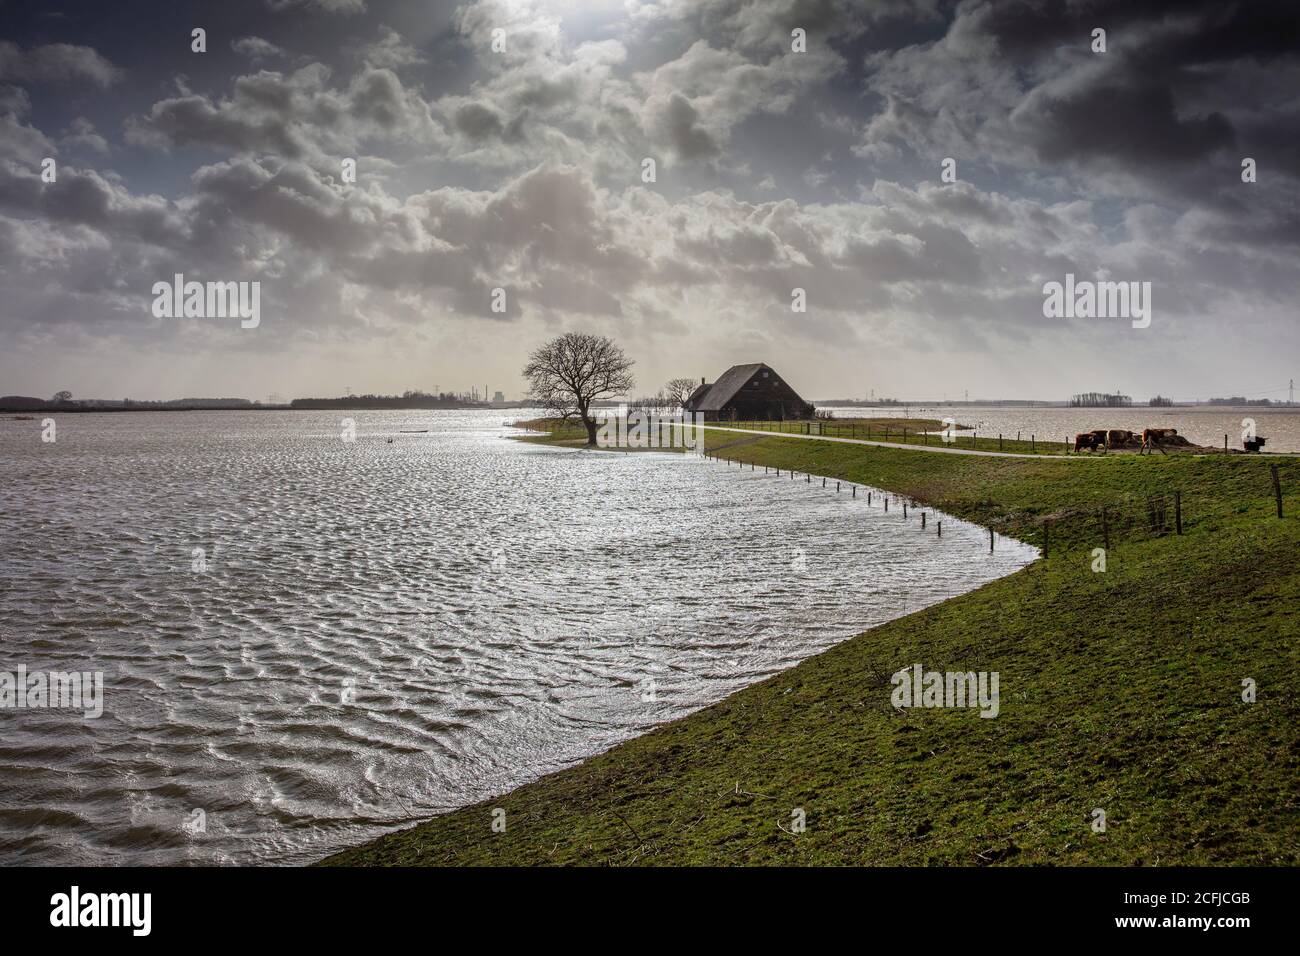 Niederlande, Werkendam, Nationalpark De Biesbosch. Absichtliche Überschwemmung des Polders Noordwaard. Raum für das River-Projekt. Isolierte Farm. Stockfoto